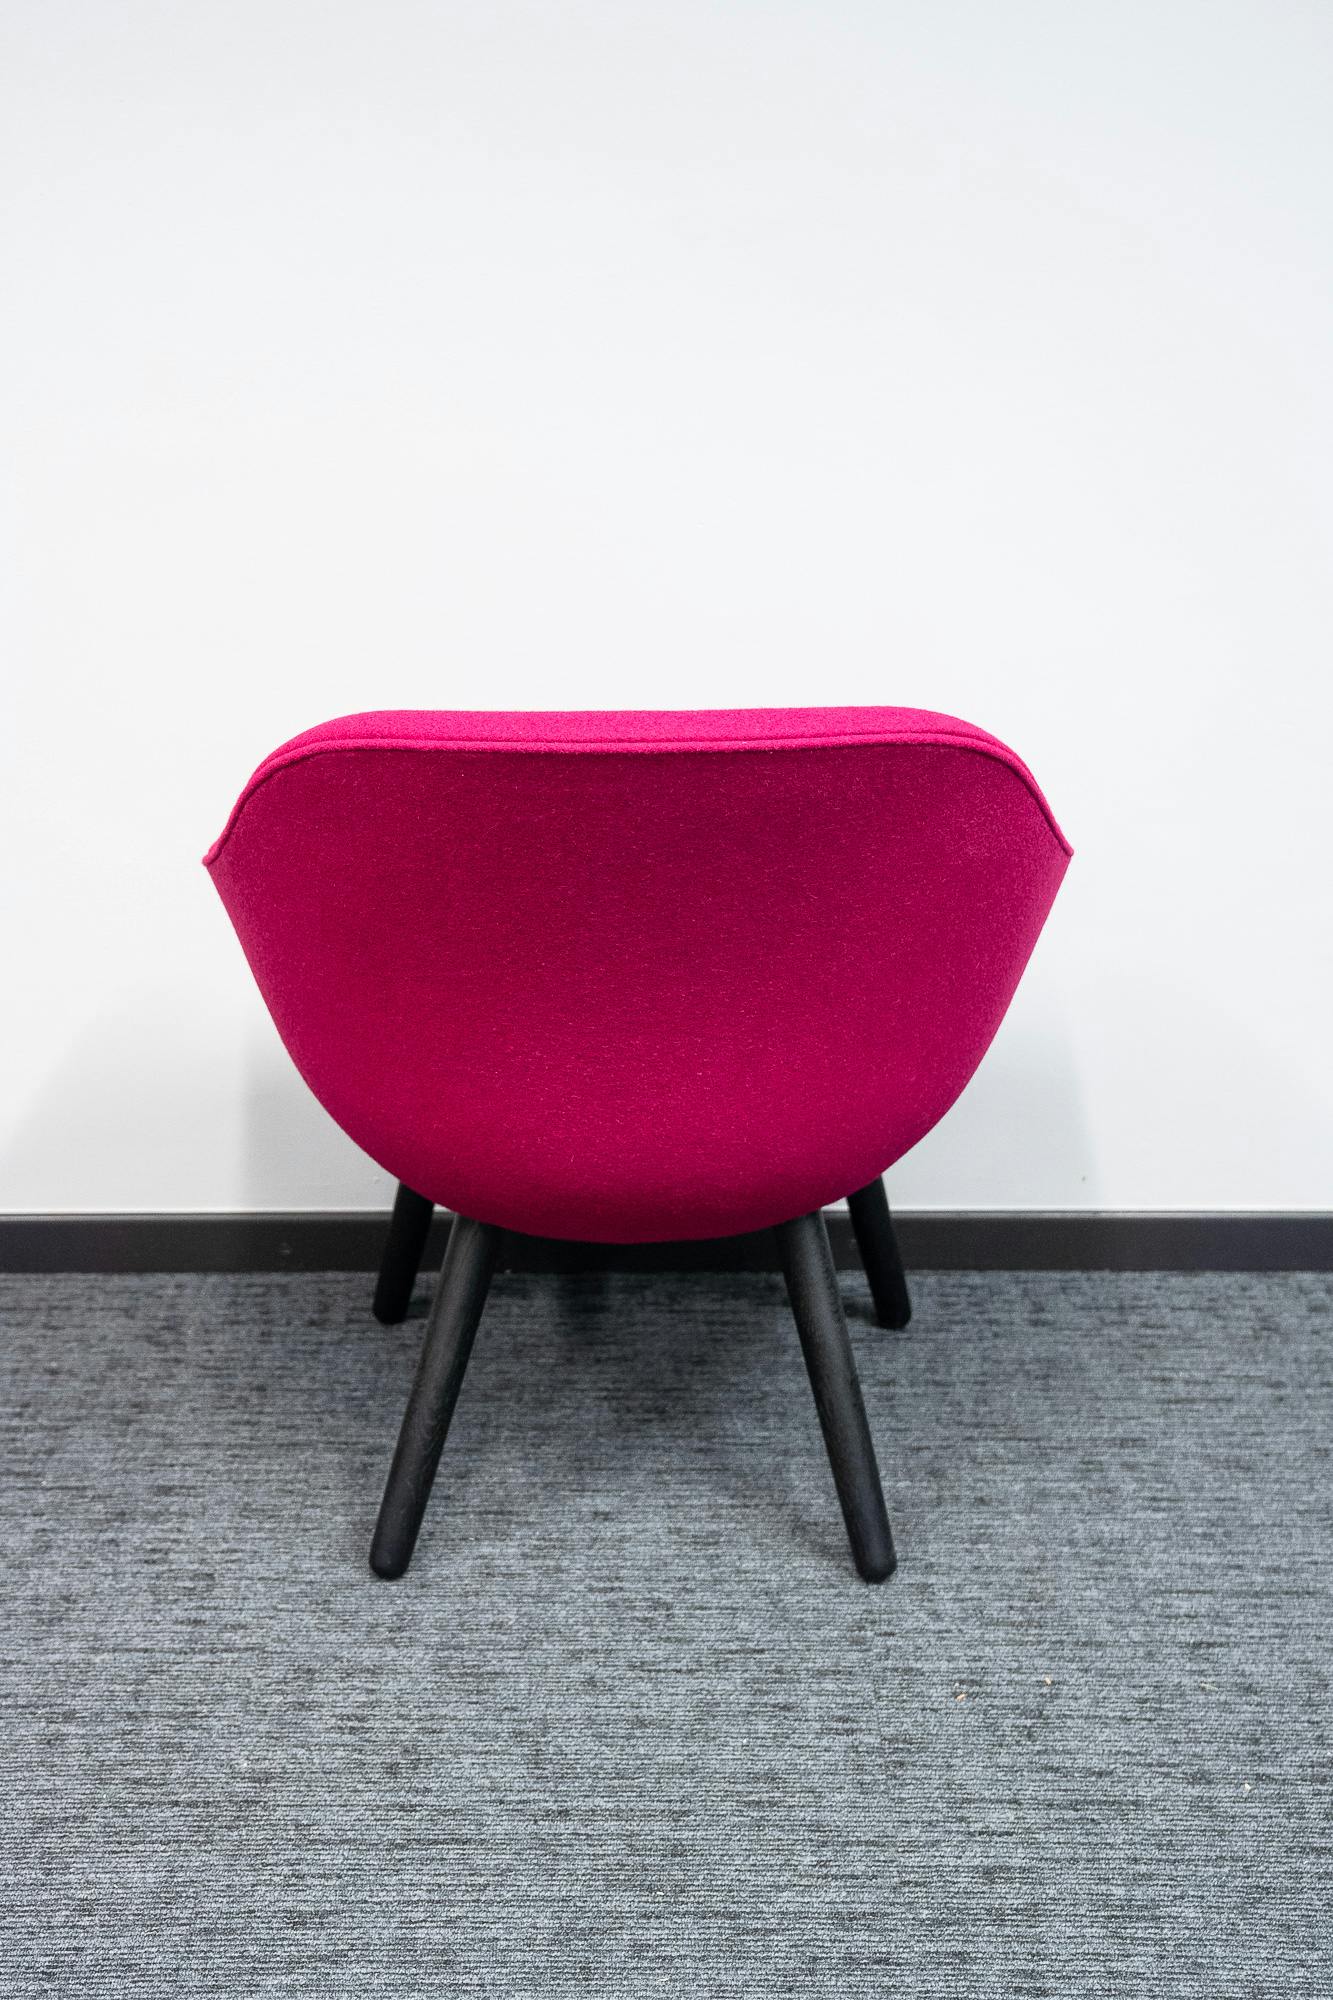 Fuschia fauteuil - Tweedehands kwaliteit "Leunstoelen en luiers" - Relieve Furniture